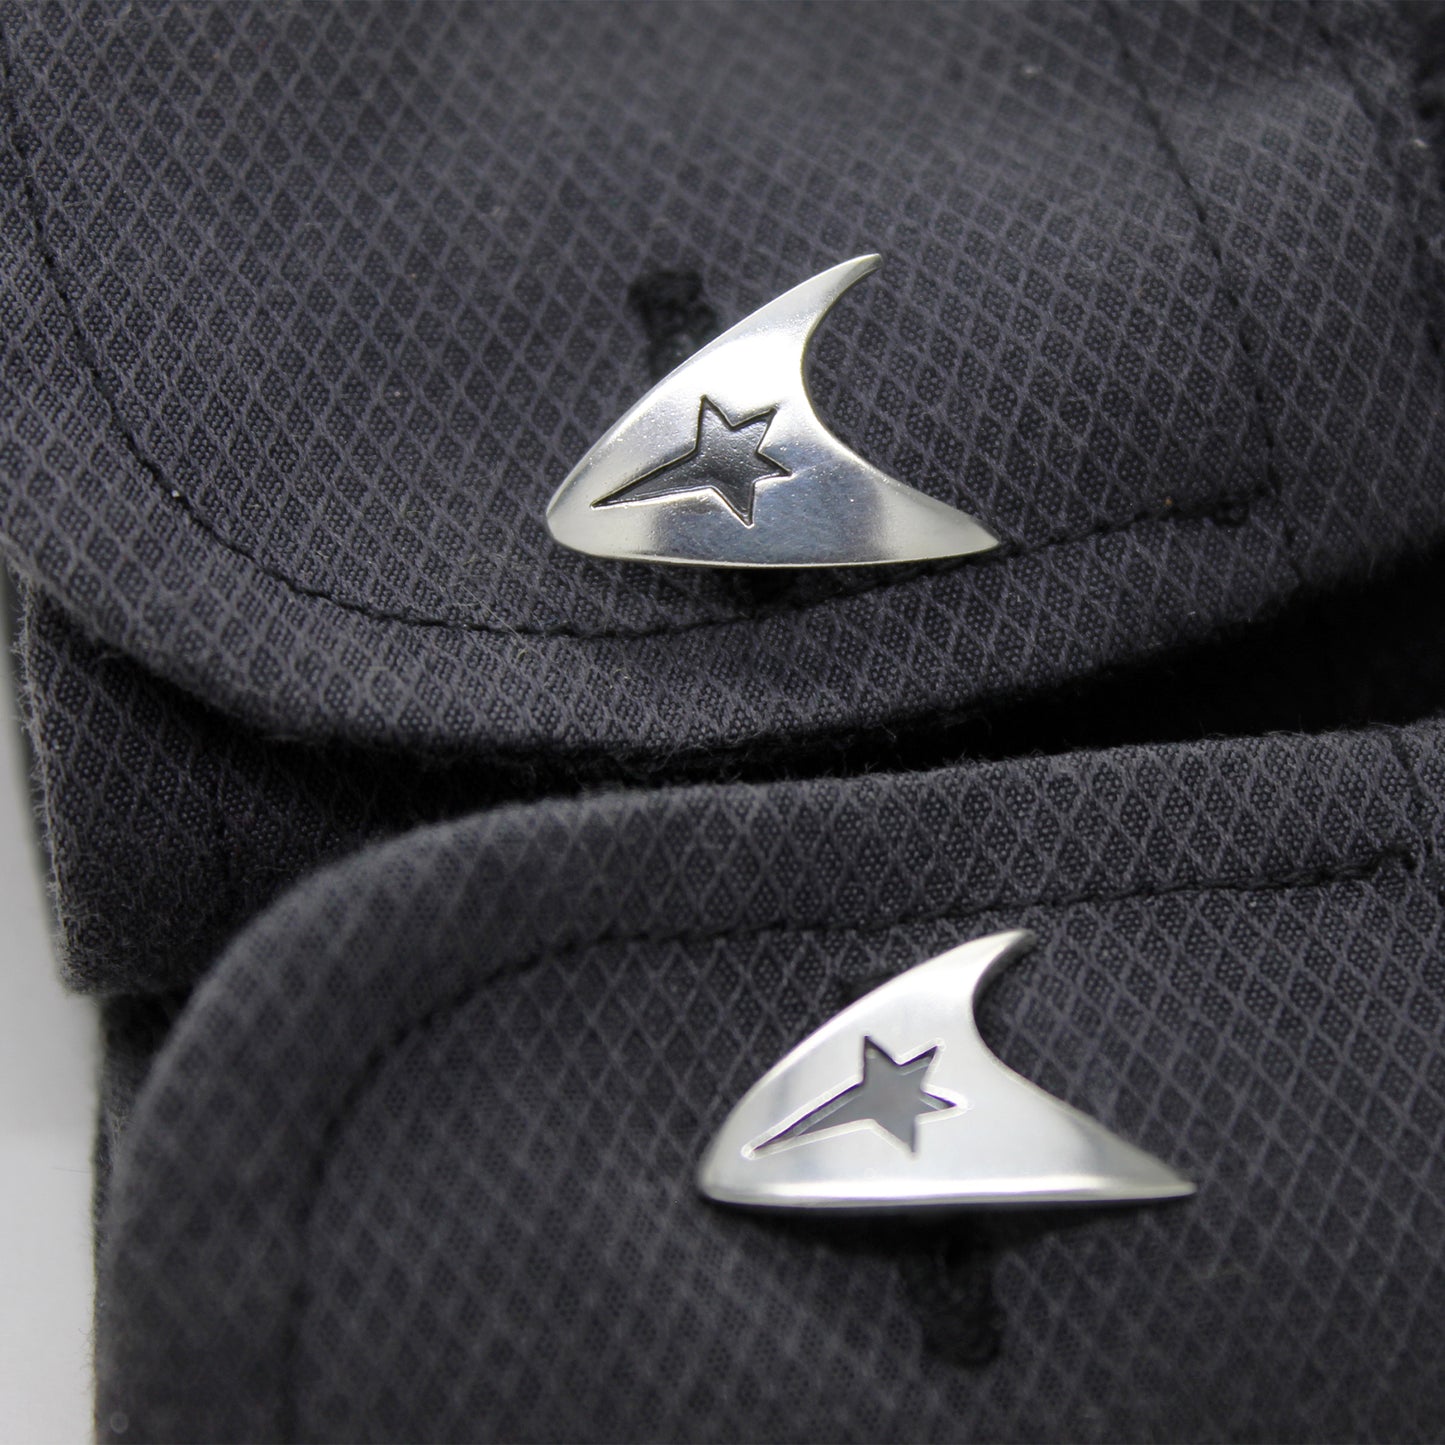 Insignia Delta de la Flota Estelar, Star Trek gemelos en plata 925